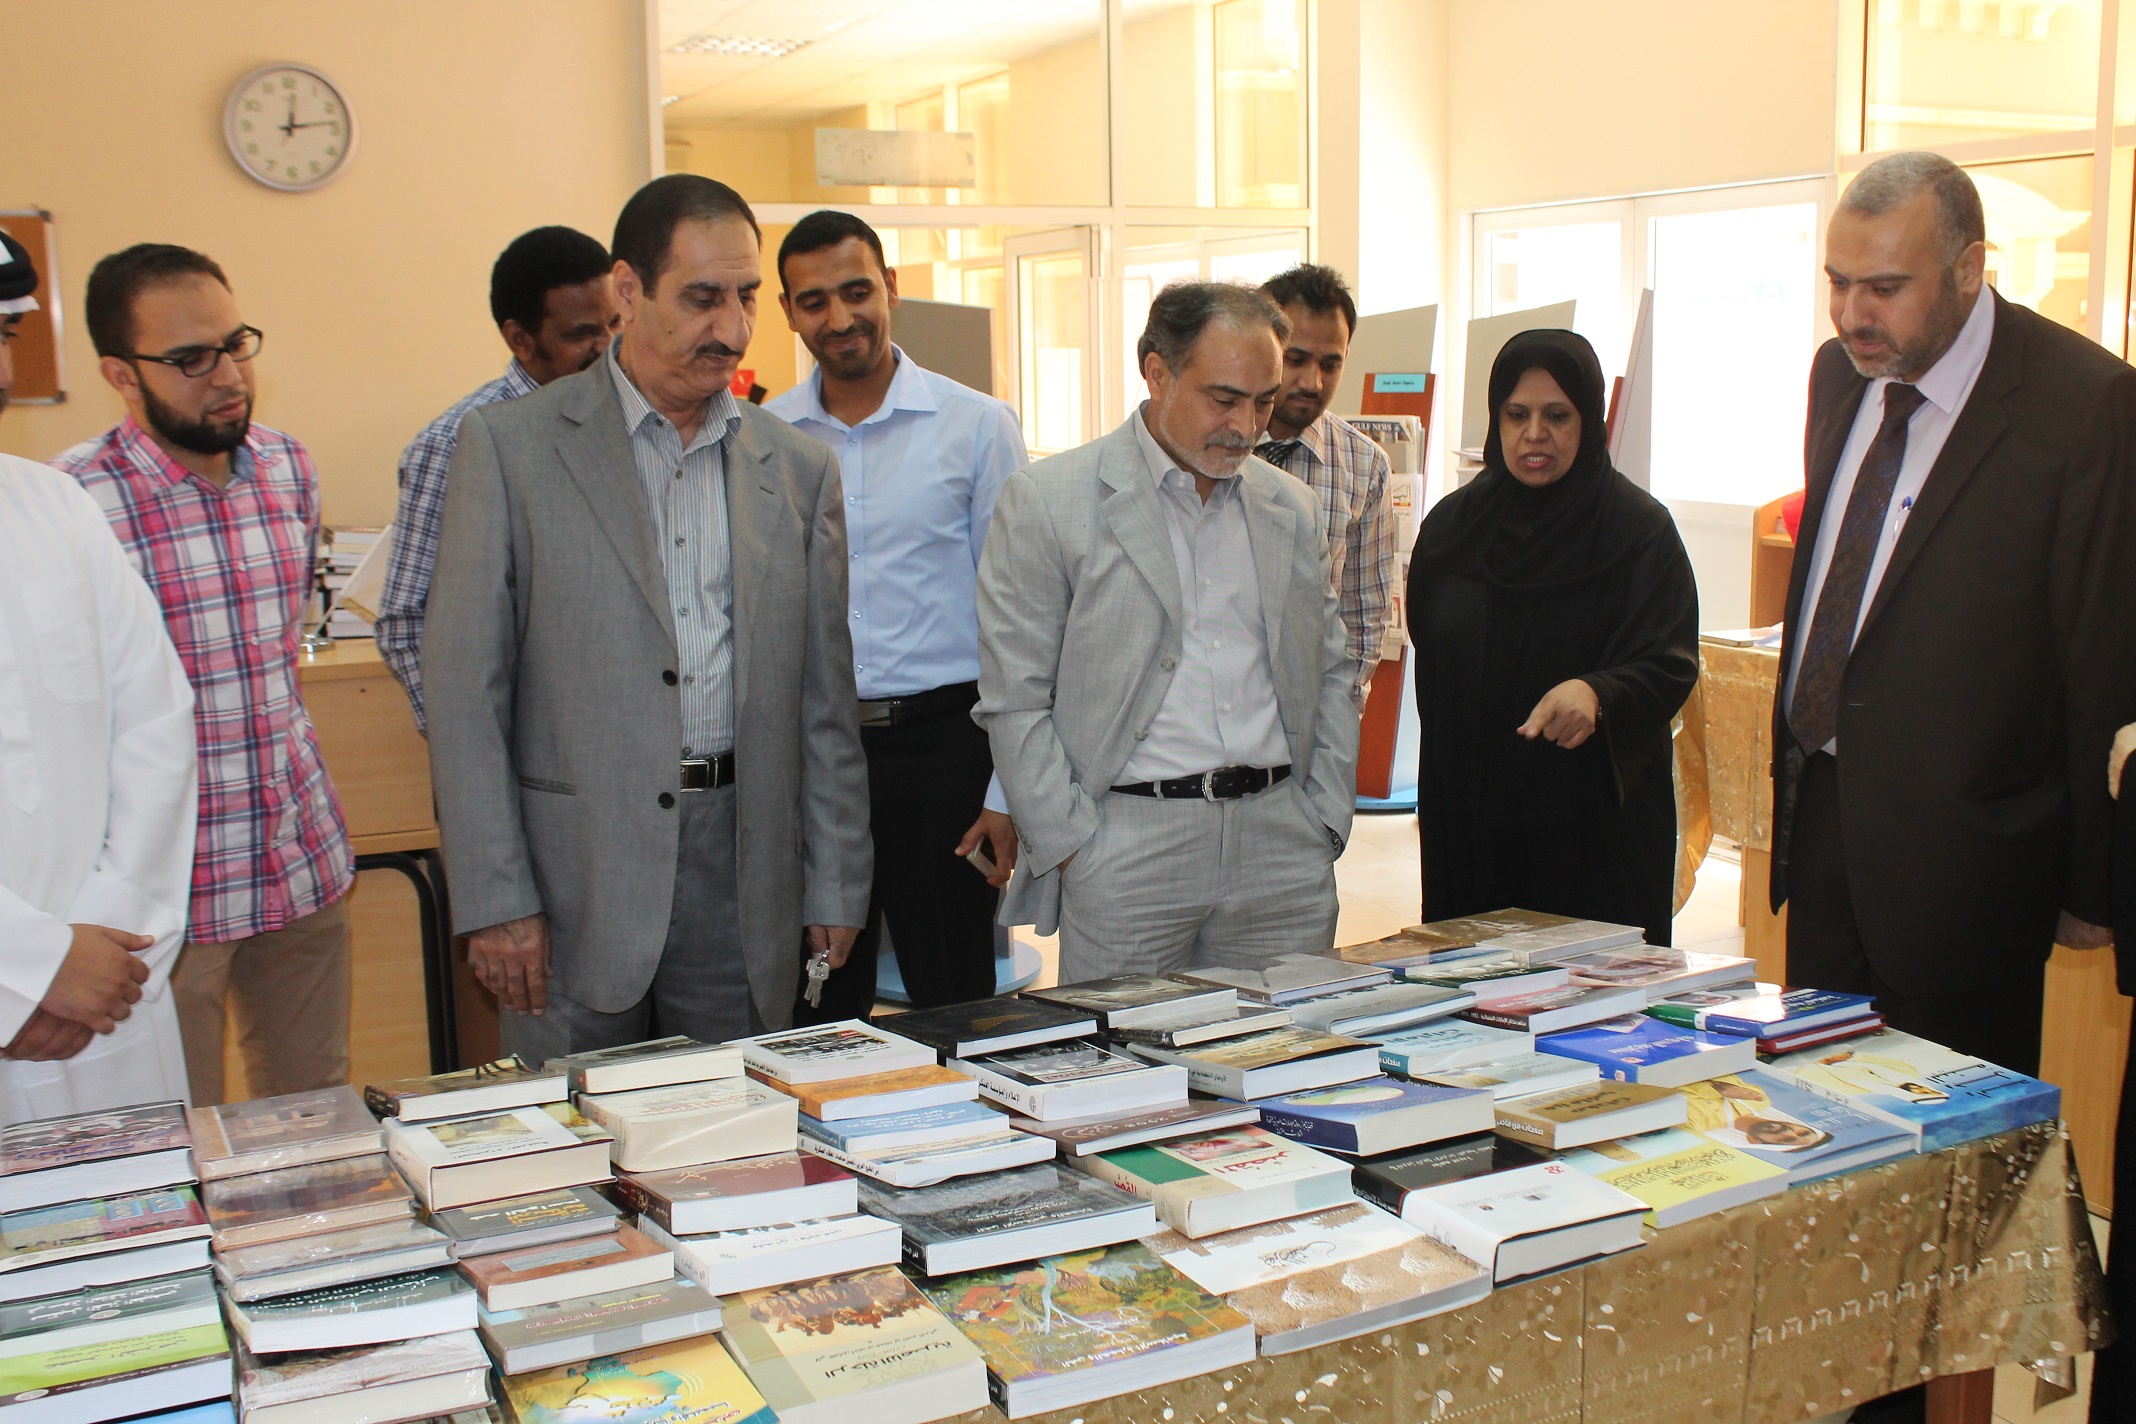 A third book fair in Al Ain University